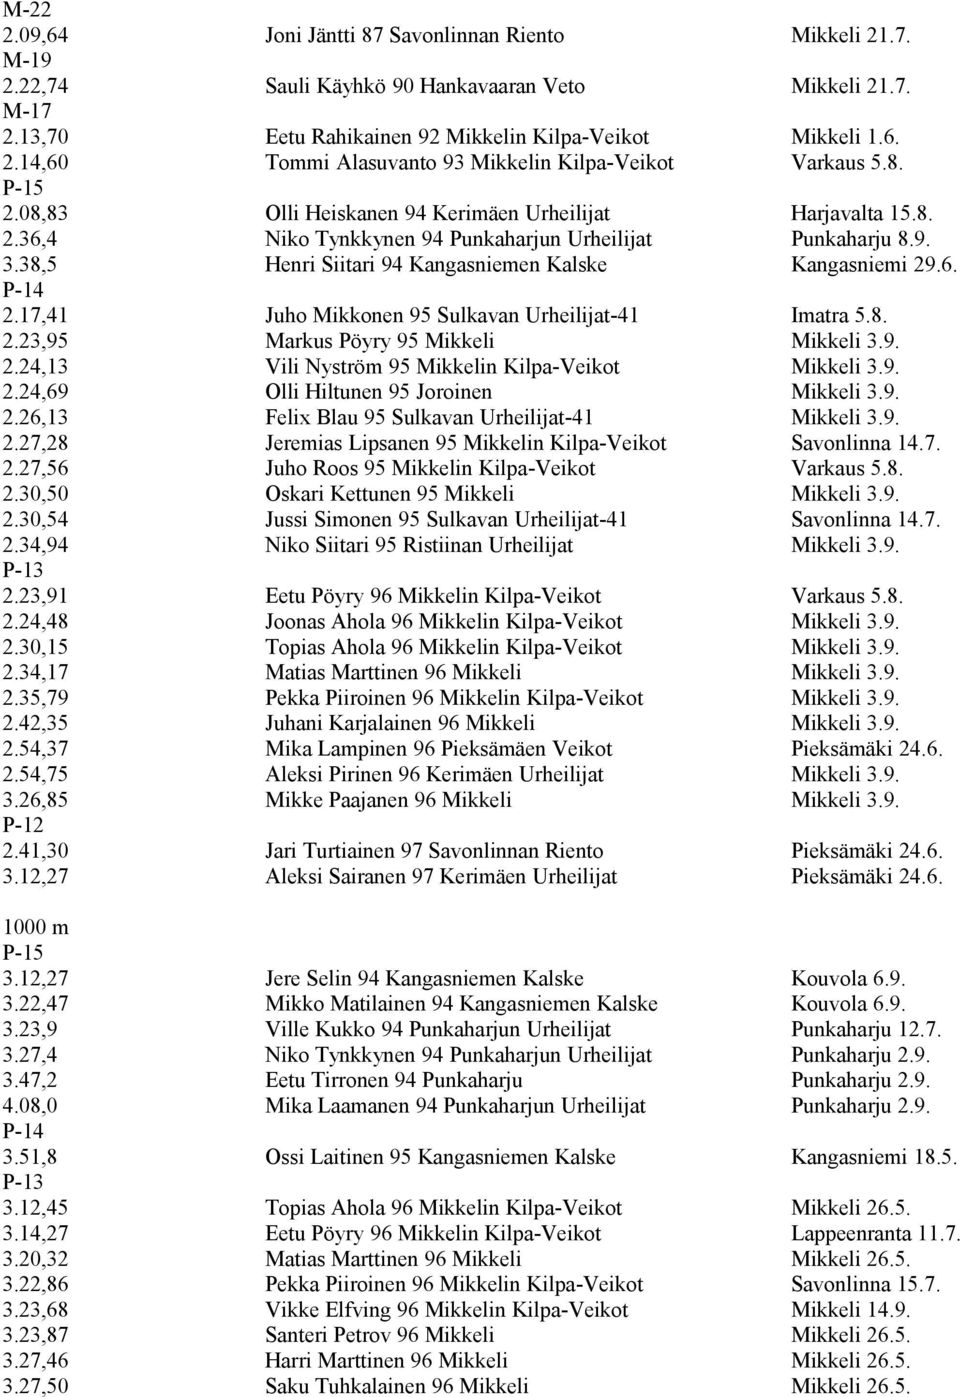 17,41 Juho Mikkonen 95 Sulkavan Urheilijat-41 Imatra 5.8. 2.23,95 Markus Pöyry 95 Mikkeli Mikkeli 3.9. 2.24,13 Vili Nyström 95 Mikkelin Kilpa-Veikot Mikkeli 3.9. 2.24,69 Olli Hiltunen 95 Joroinen Mikkeli 3.